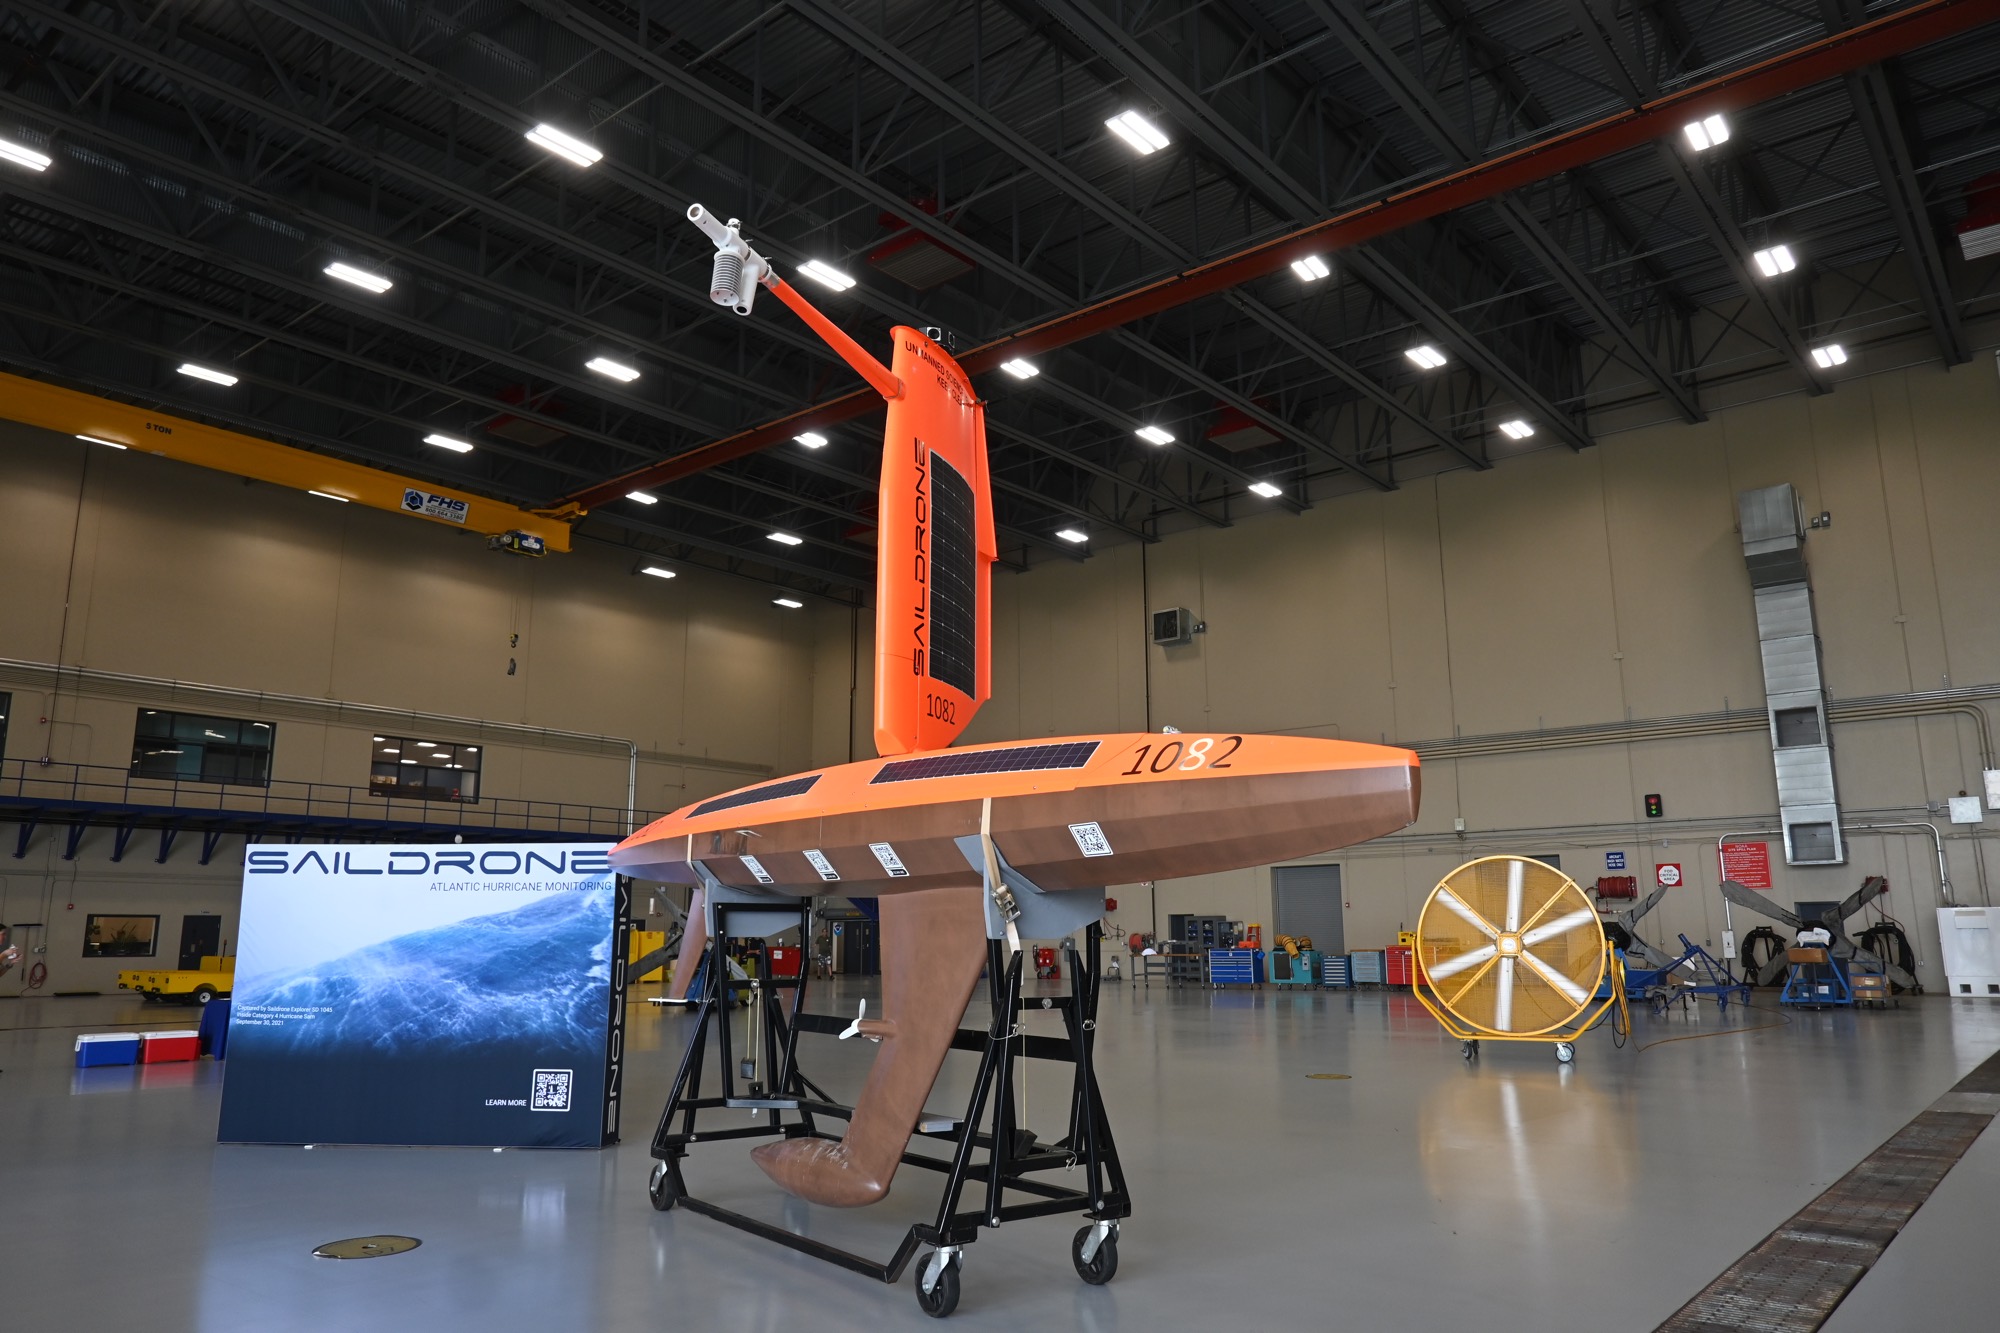 NOAA Prepares for Hurricane Season with More Gliders, New Saildrone CONOPs